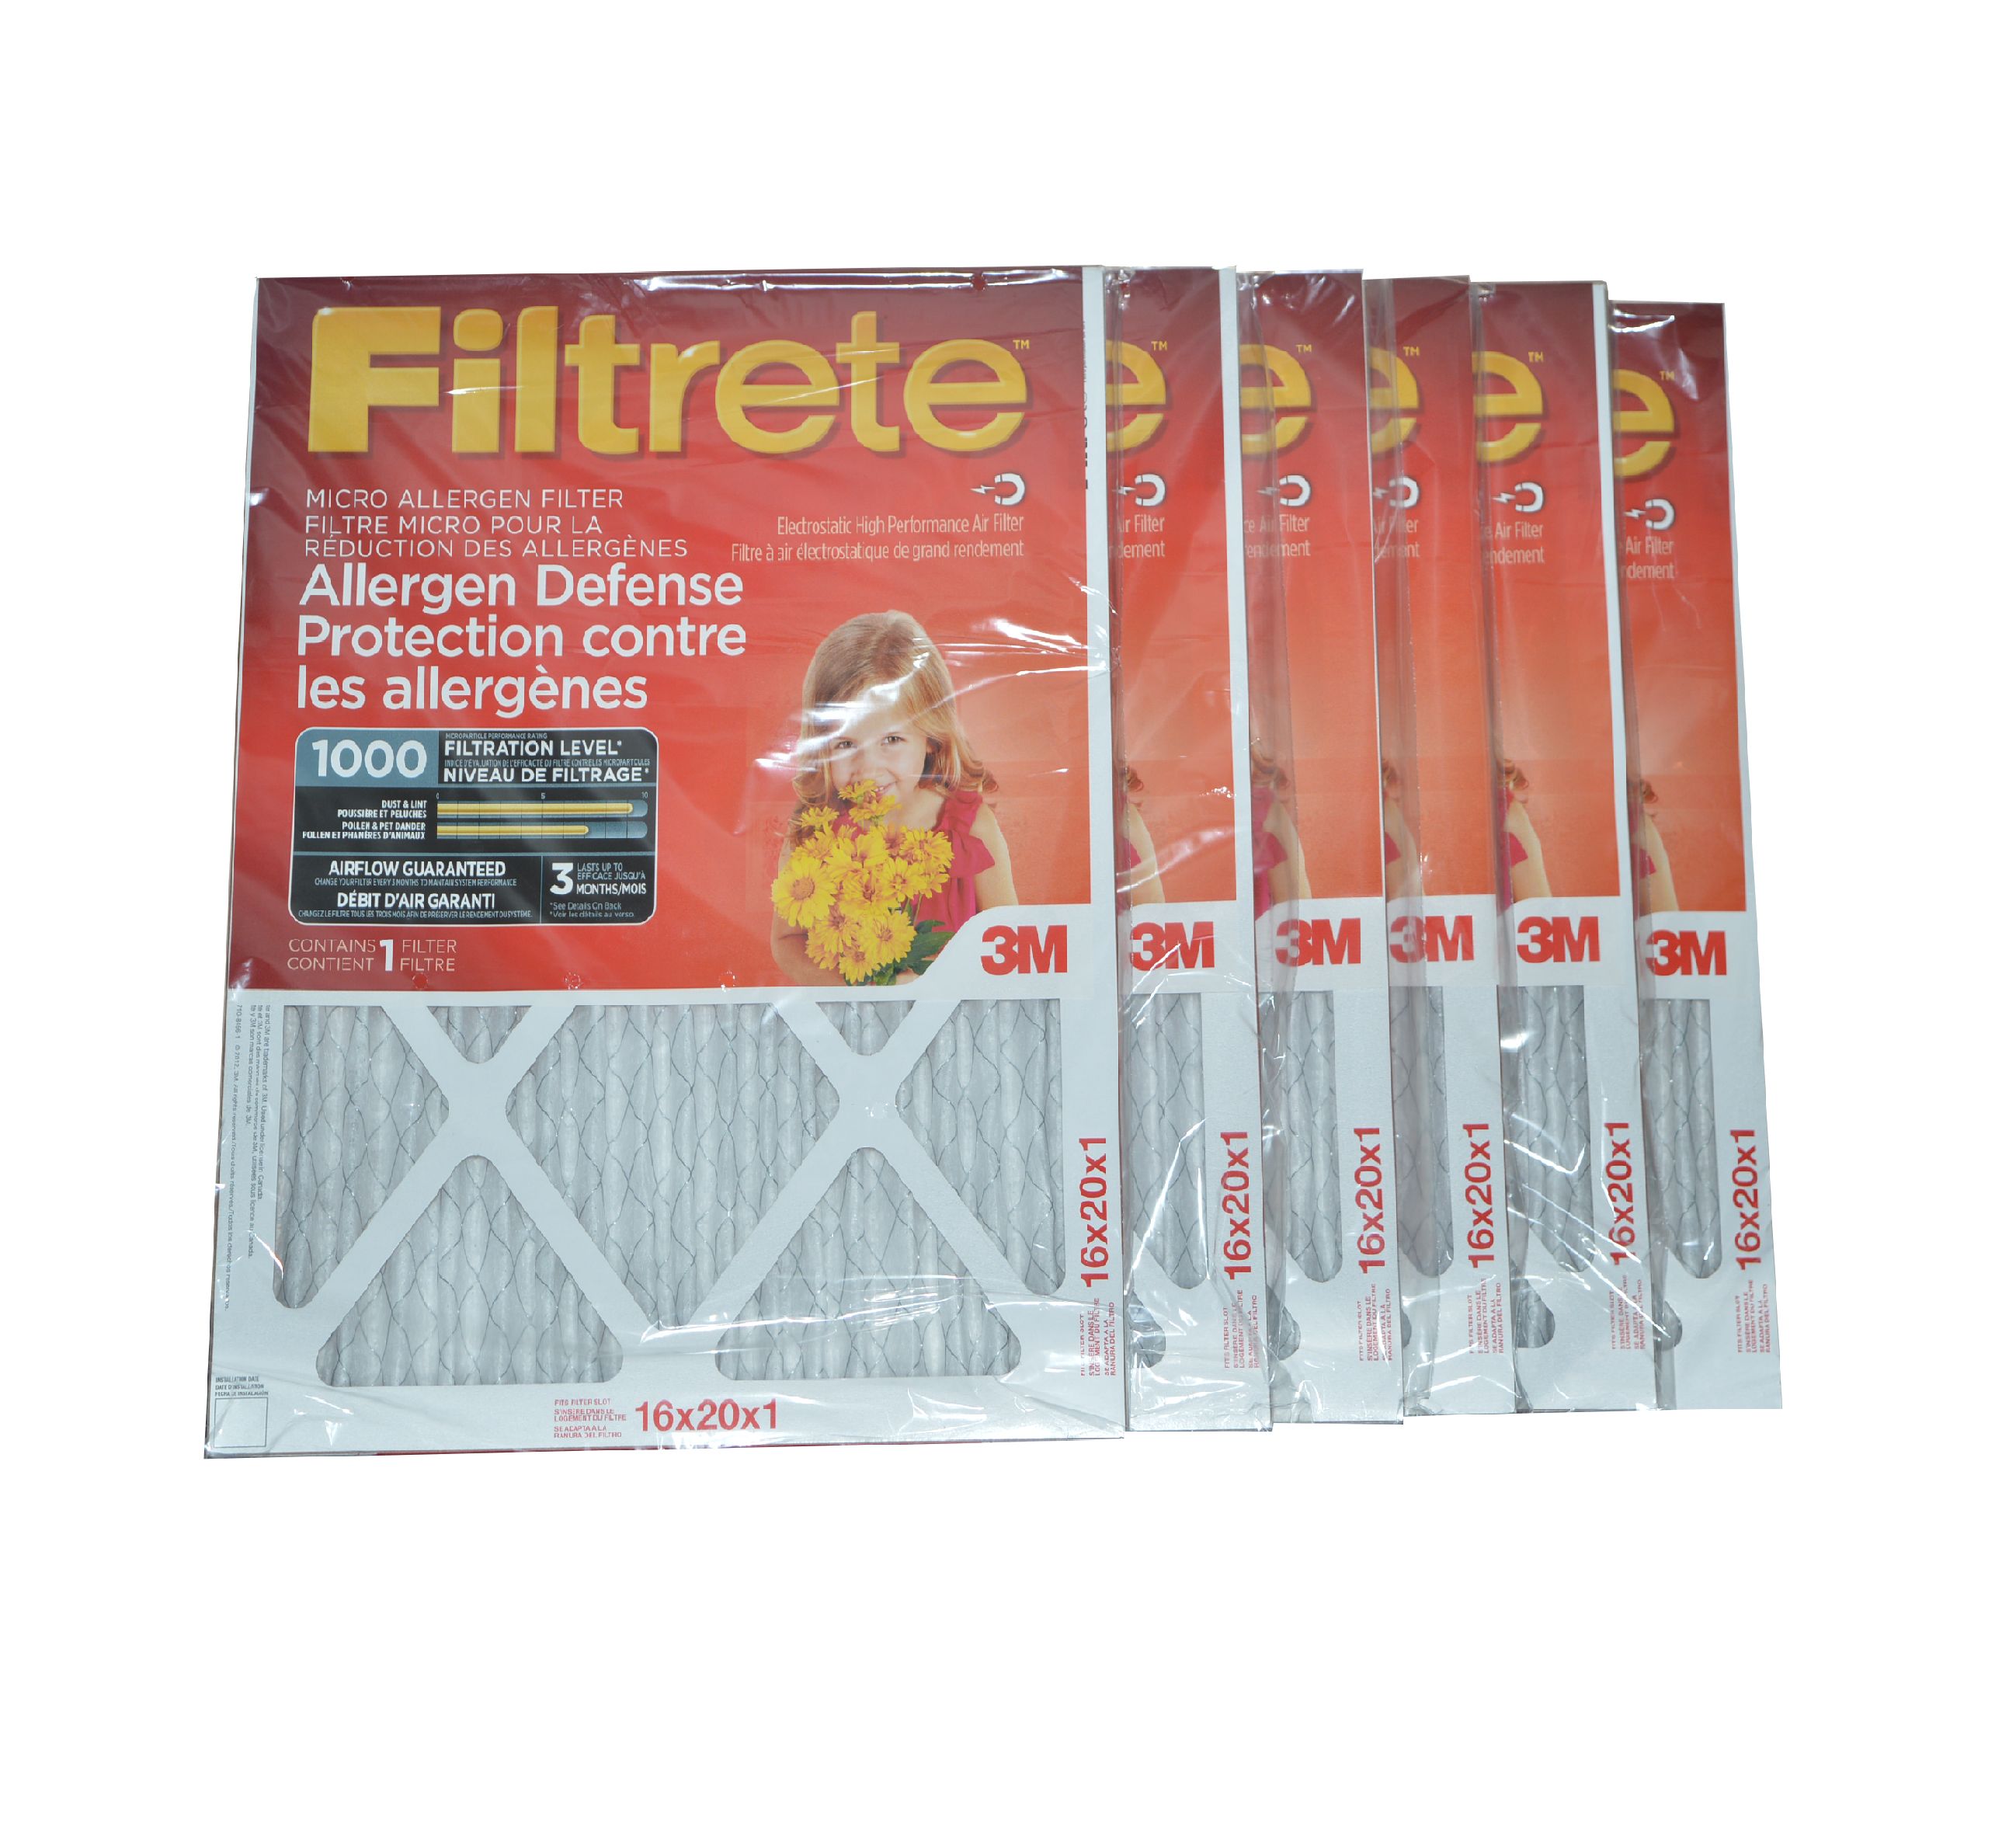 3M Filtrete 16x20x1 Furnace Filter MPR 1000. Case of 6